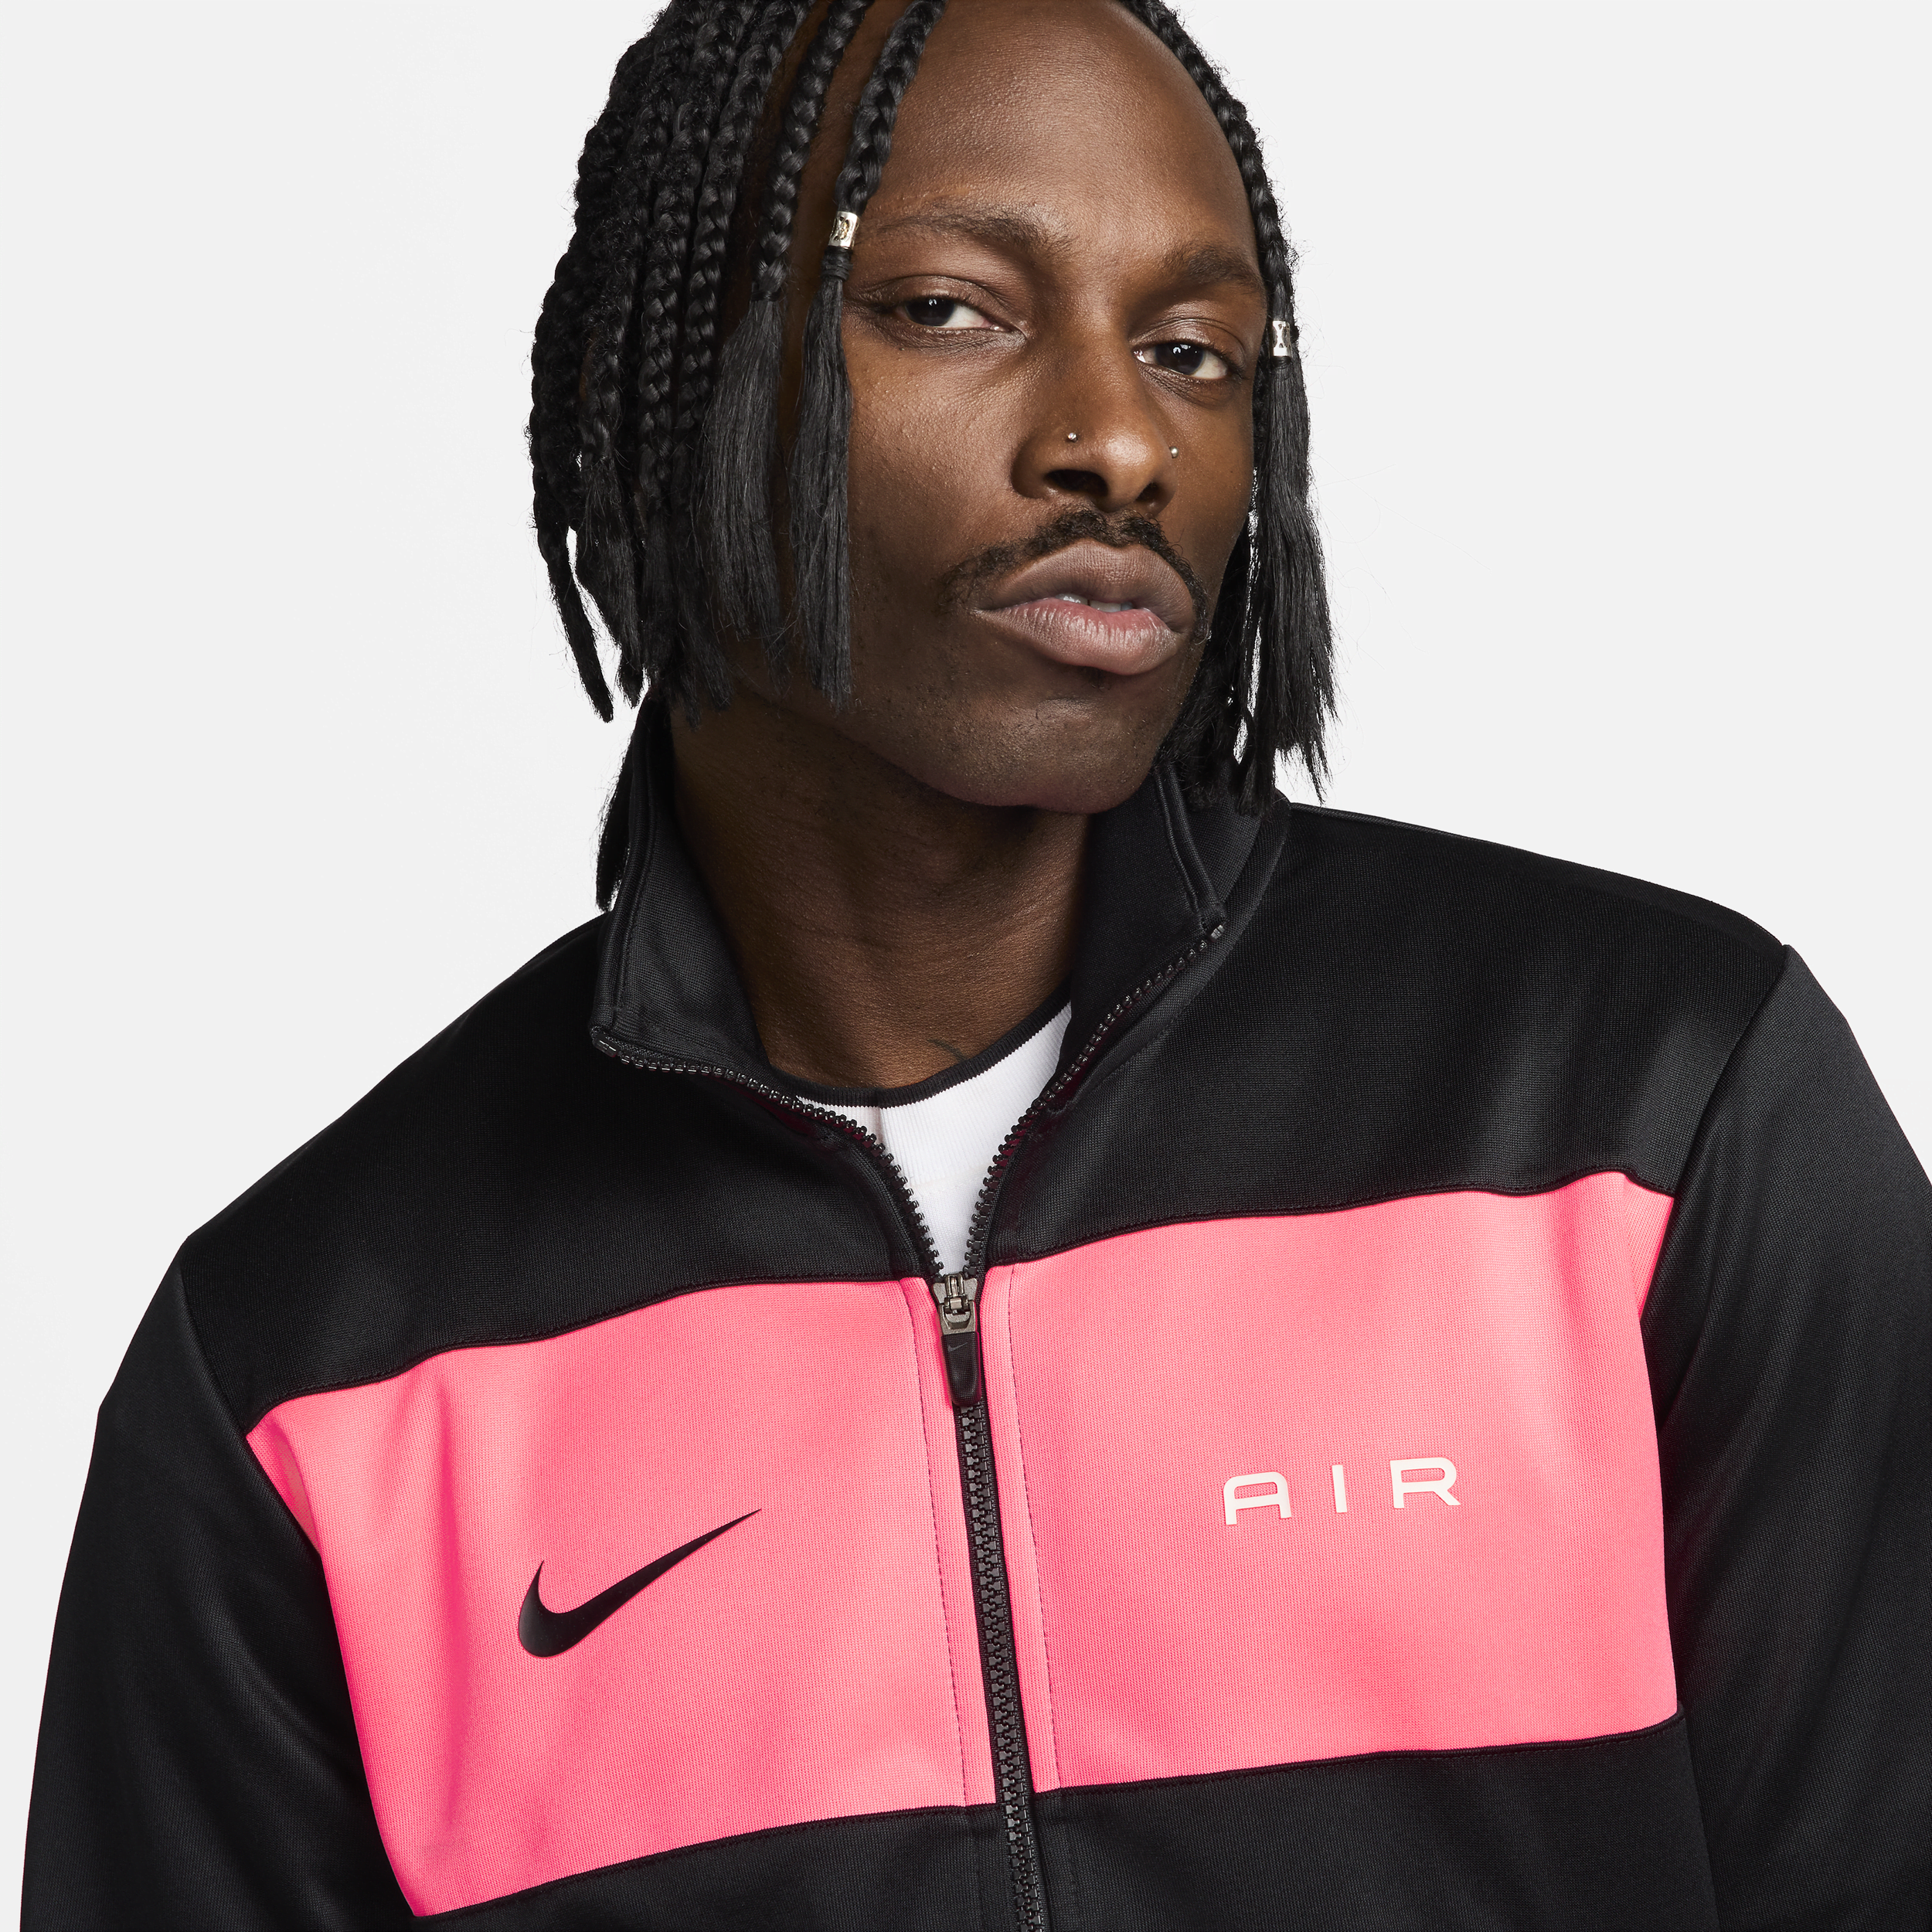 Nike Air trainingsjack voor heren Zwart